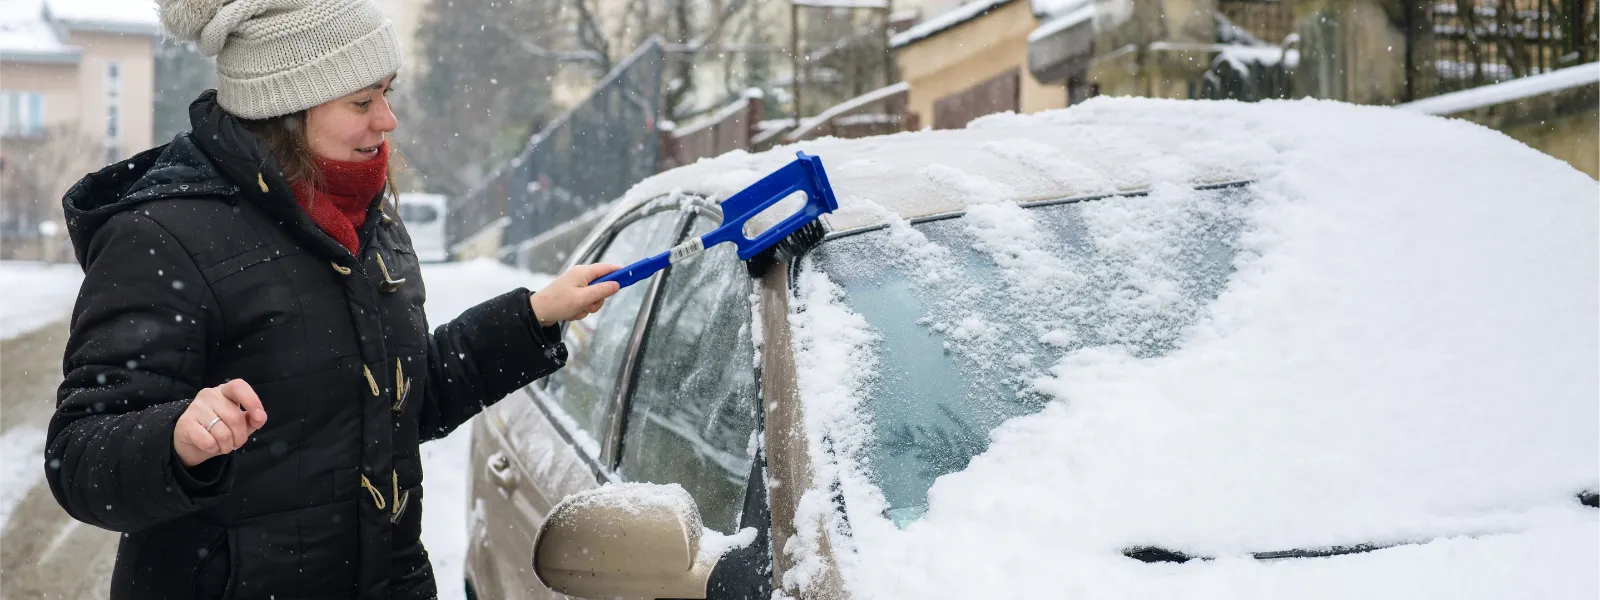 žena zametá sníh z auta